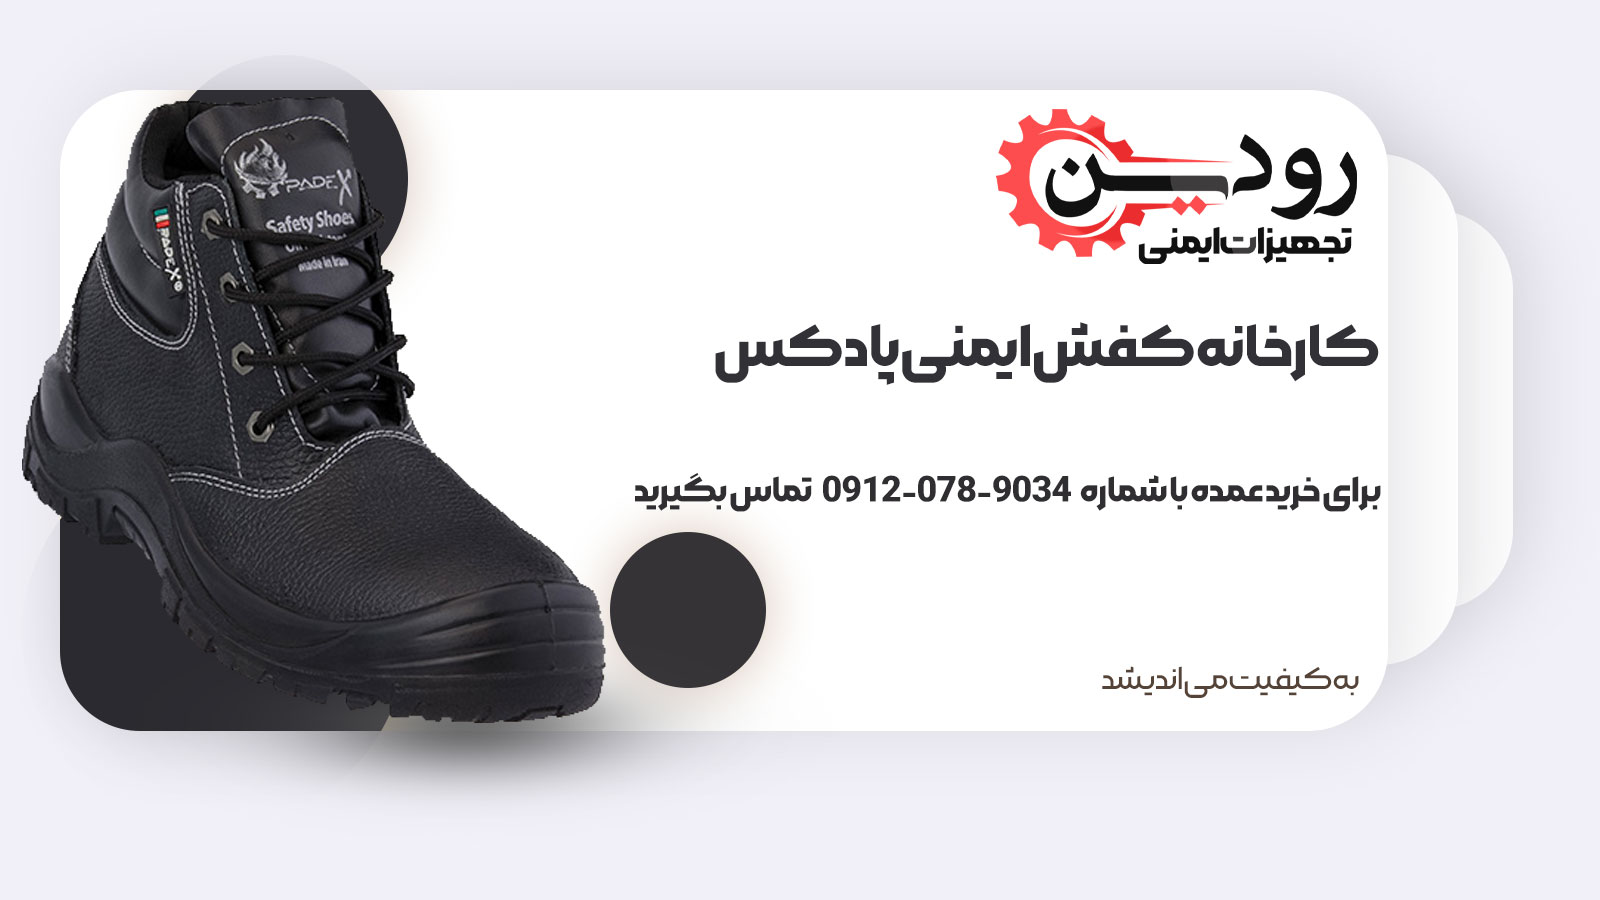 کارخانه کفش ایمنی پادکس با نام ایمن پاد پوشش در حال فعالیت است.